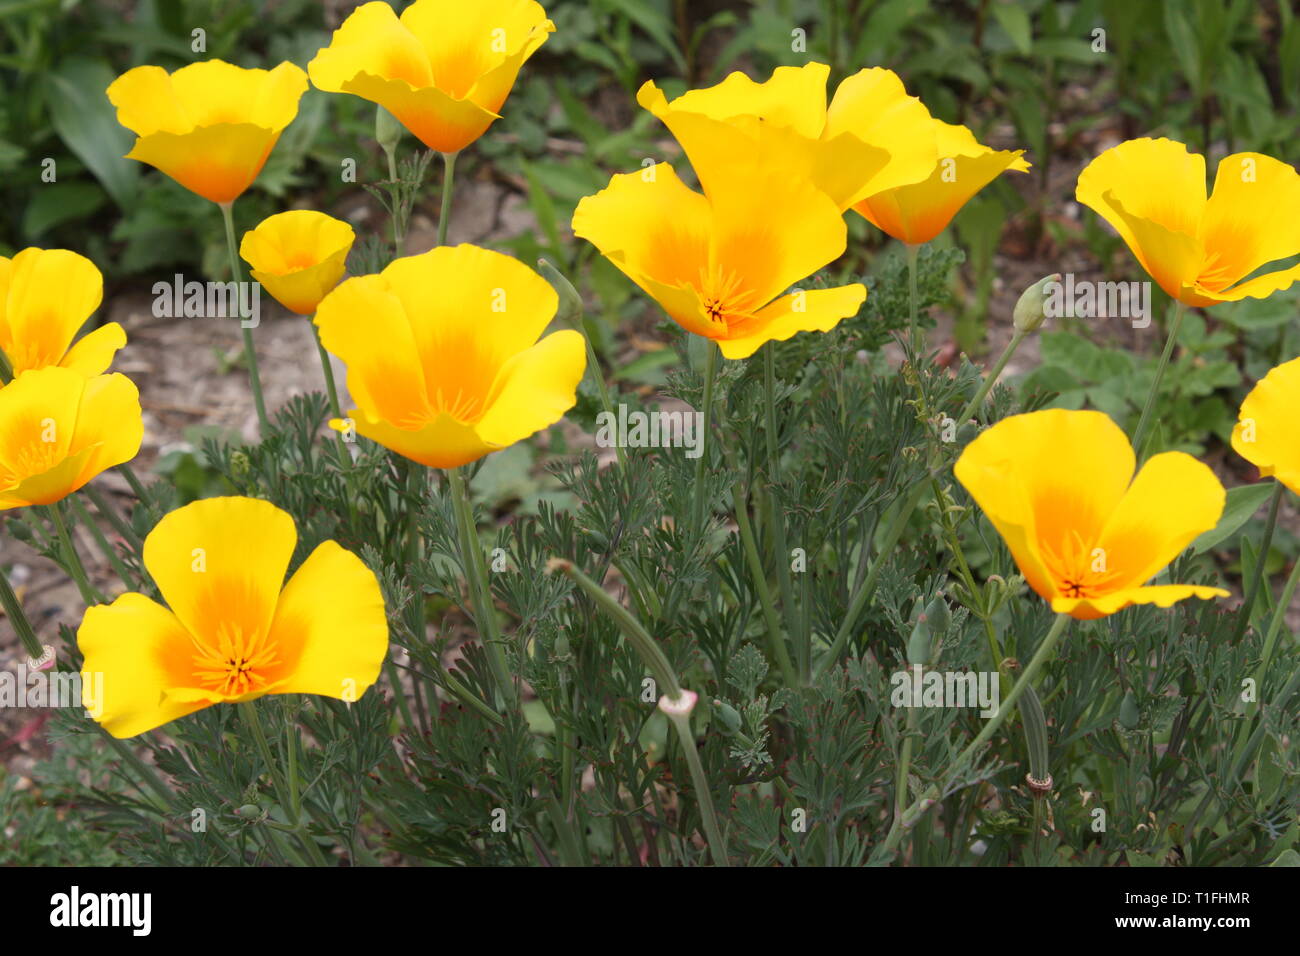 Yellow california poppy flowers Stock Photo